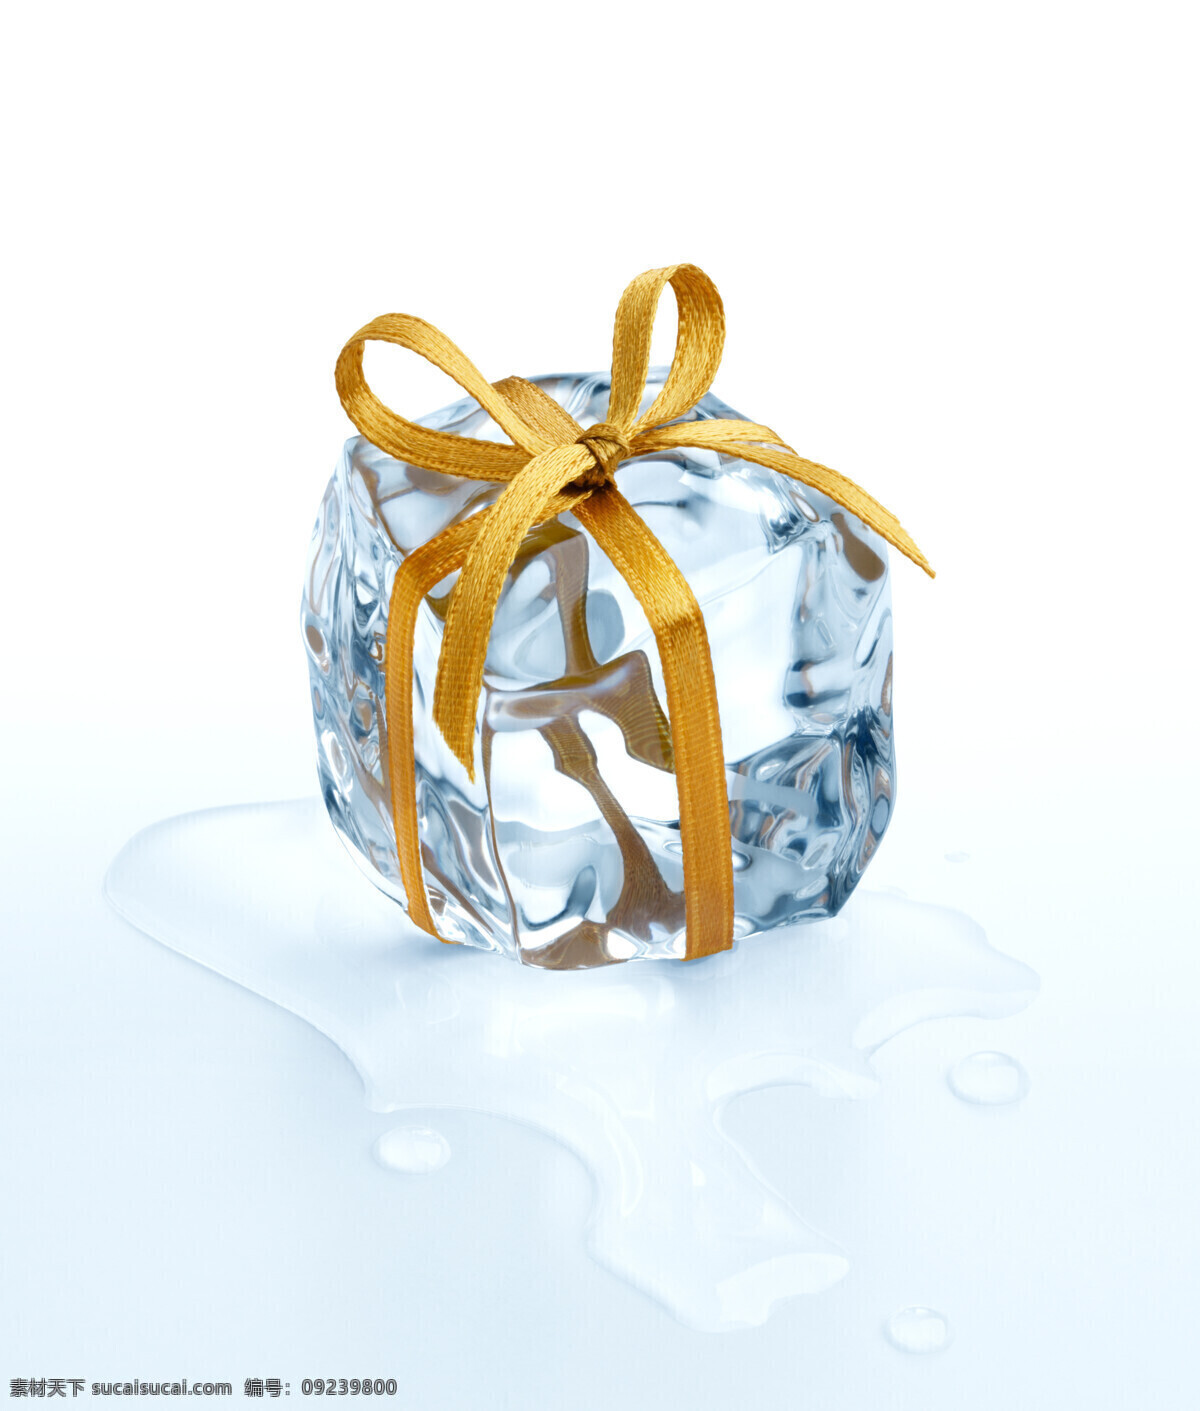 冰块礼包摄影 冰 冰块 冰块设计 水 水珠 水滴 礼包 创意礼包 冰块摄影 摄影图库 酒水饮料 餐饮美食 白色